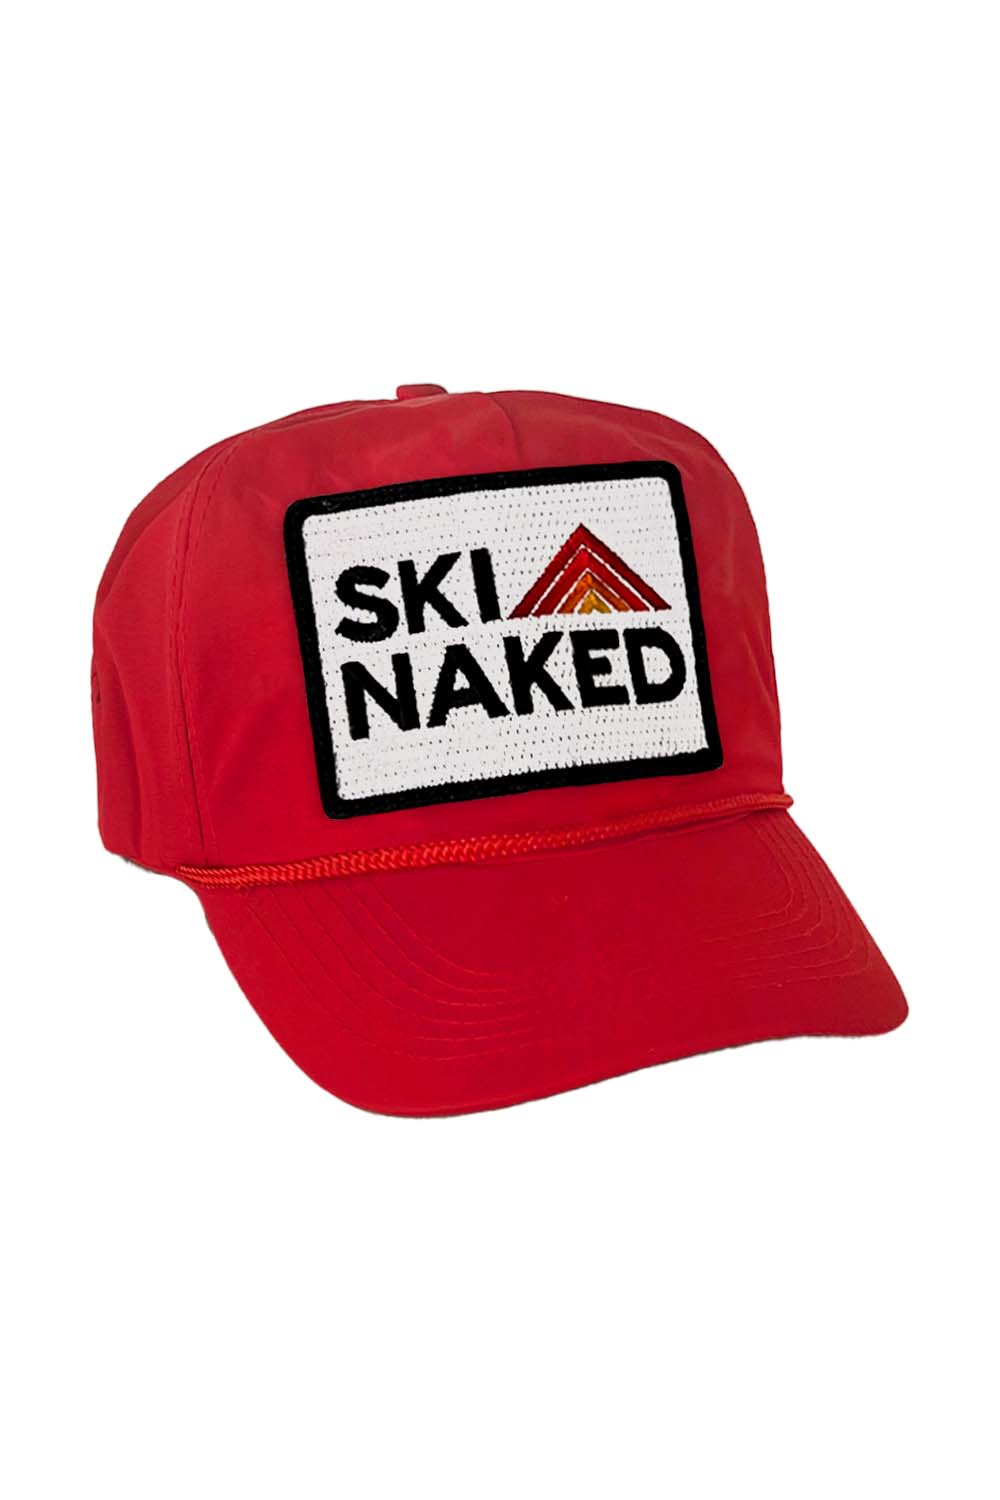 SKI NAKED - VINTAGE NYLON TRUCKER HAT HATS Aviator Nation RED 